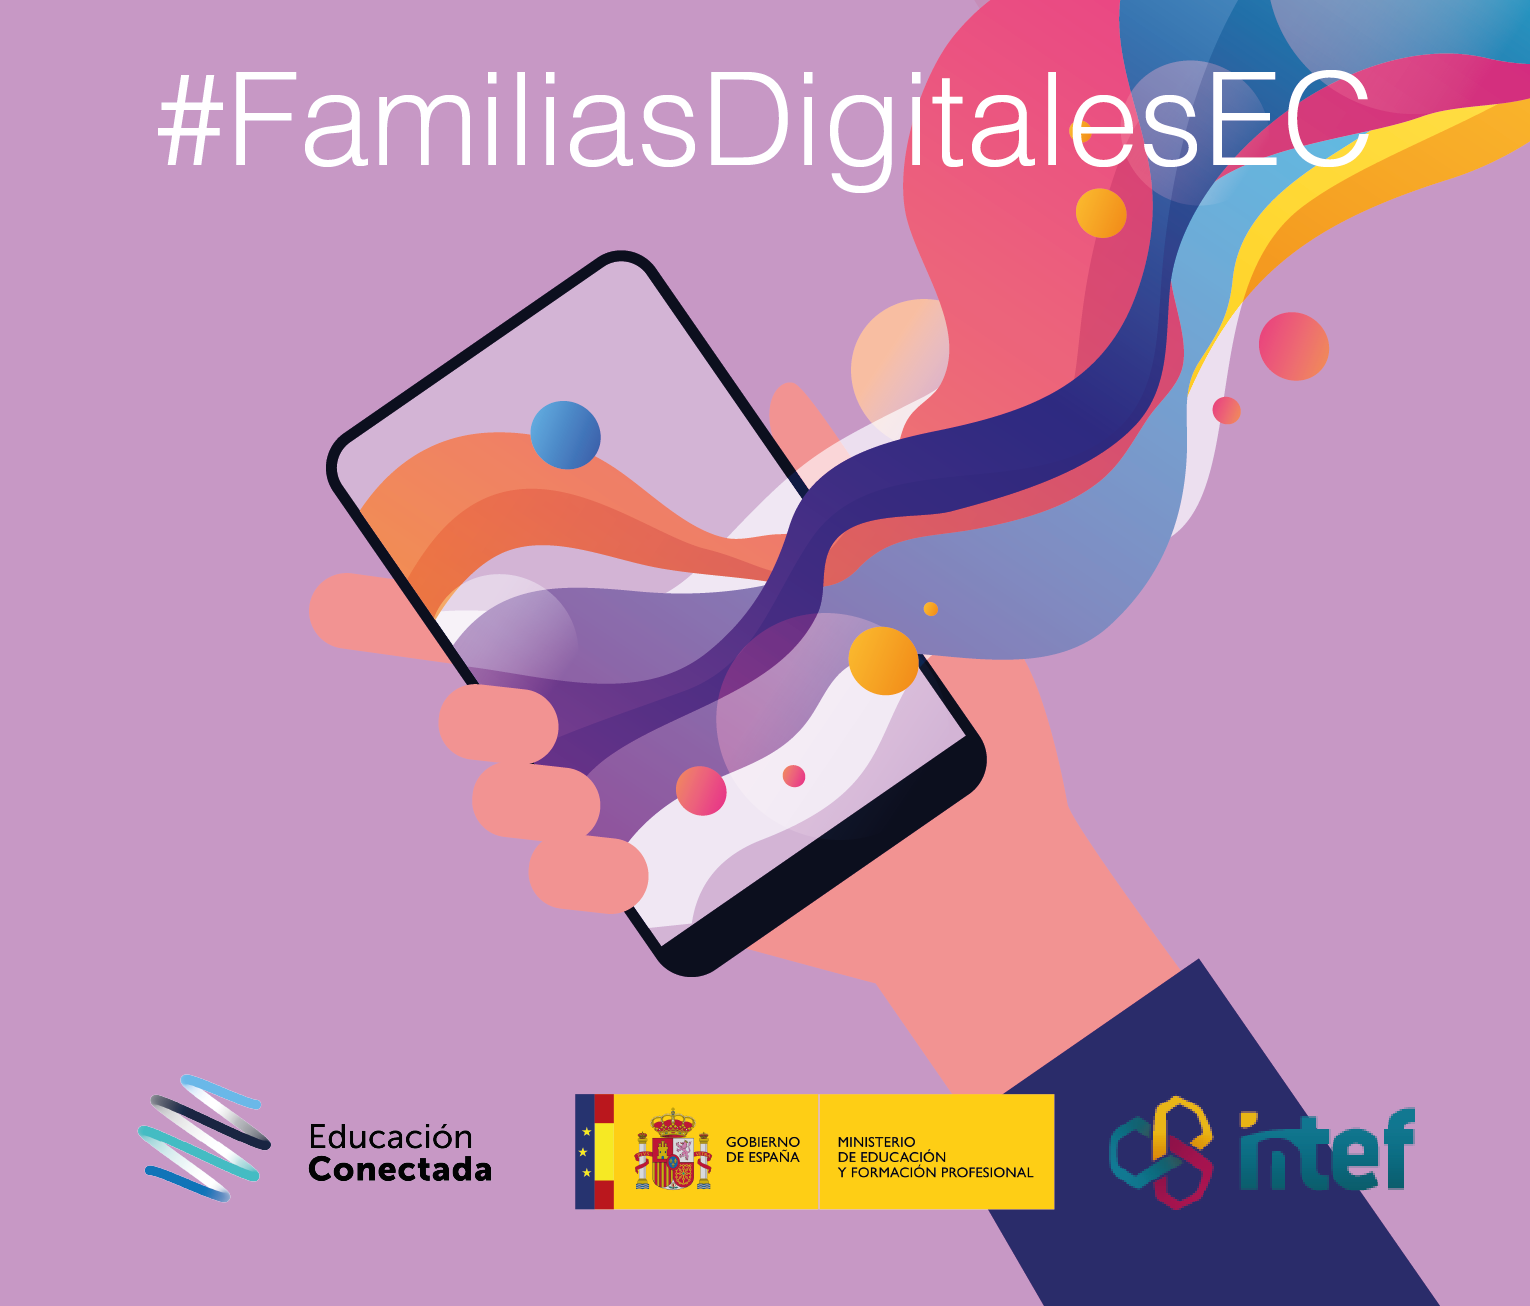 Familias digitales: Acompaña a tus hijas e hijos en la creación de contenidos digitales (nivel básico) FamiliasDig5